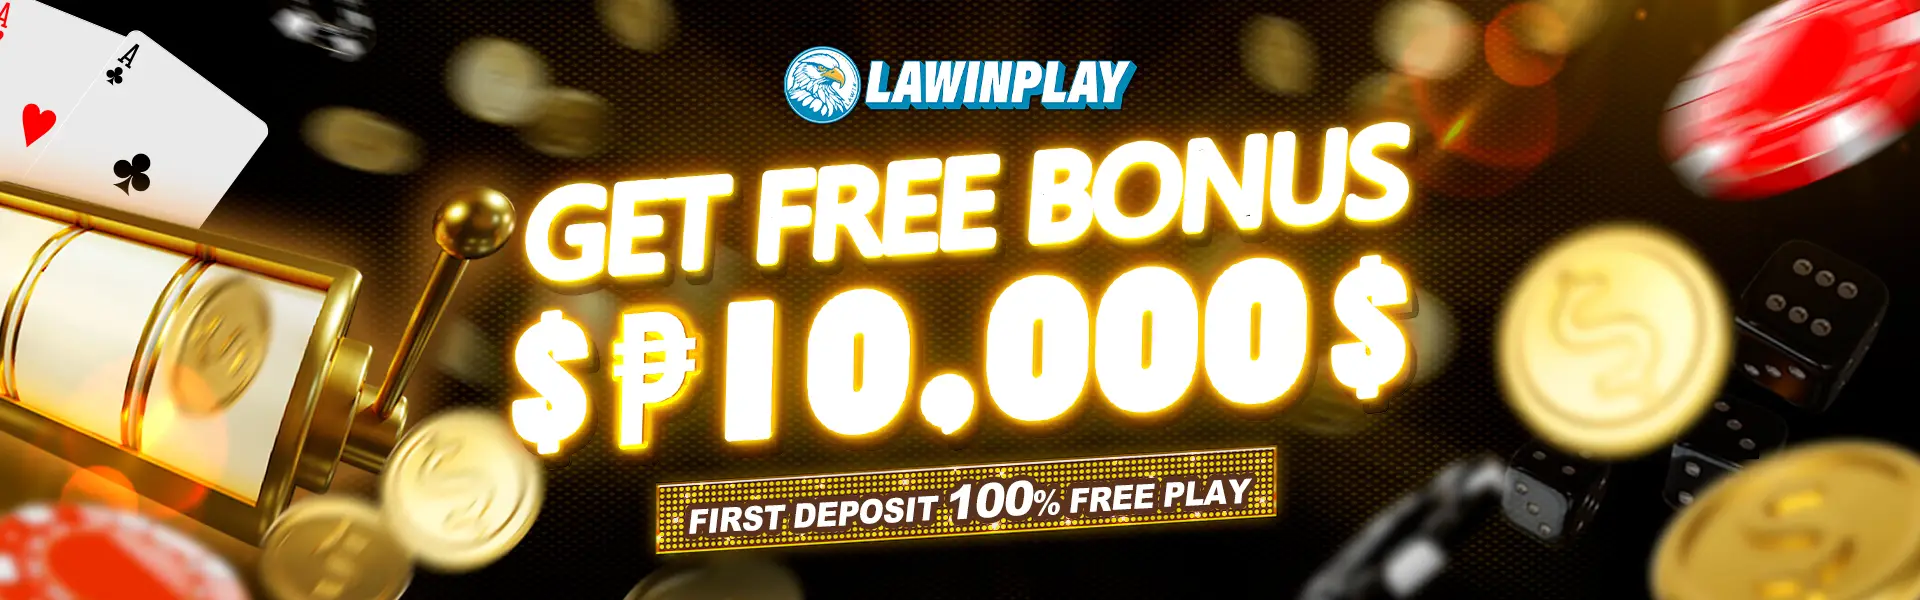 lawinplay-bonus4